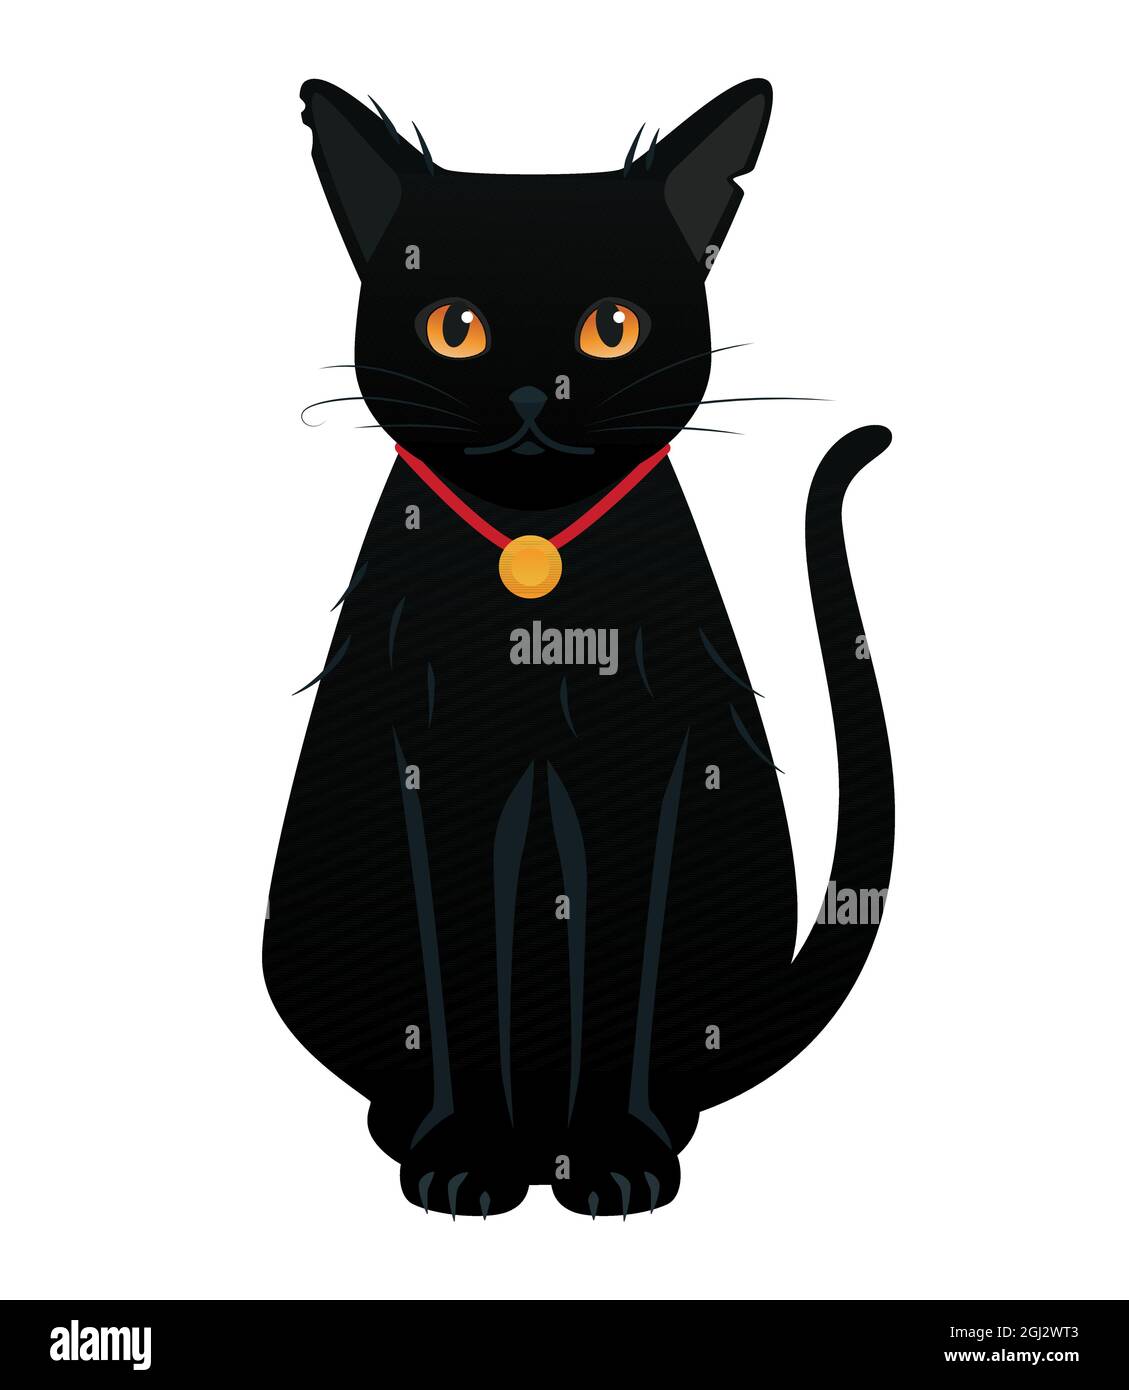 Gatto nero con occhi grandi - oggetto moderno in stile cartone animato.  L'illustrazione su sfondo bianco può essere utilizzata come icona. Animale  magico che accompagna le streghe, sorc Immagine e Vettoriale -